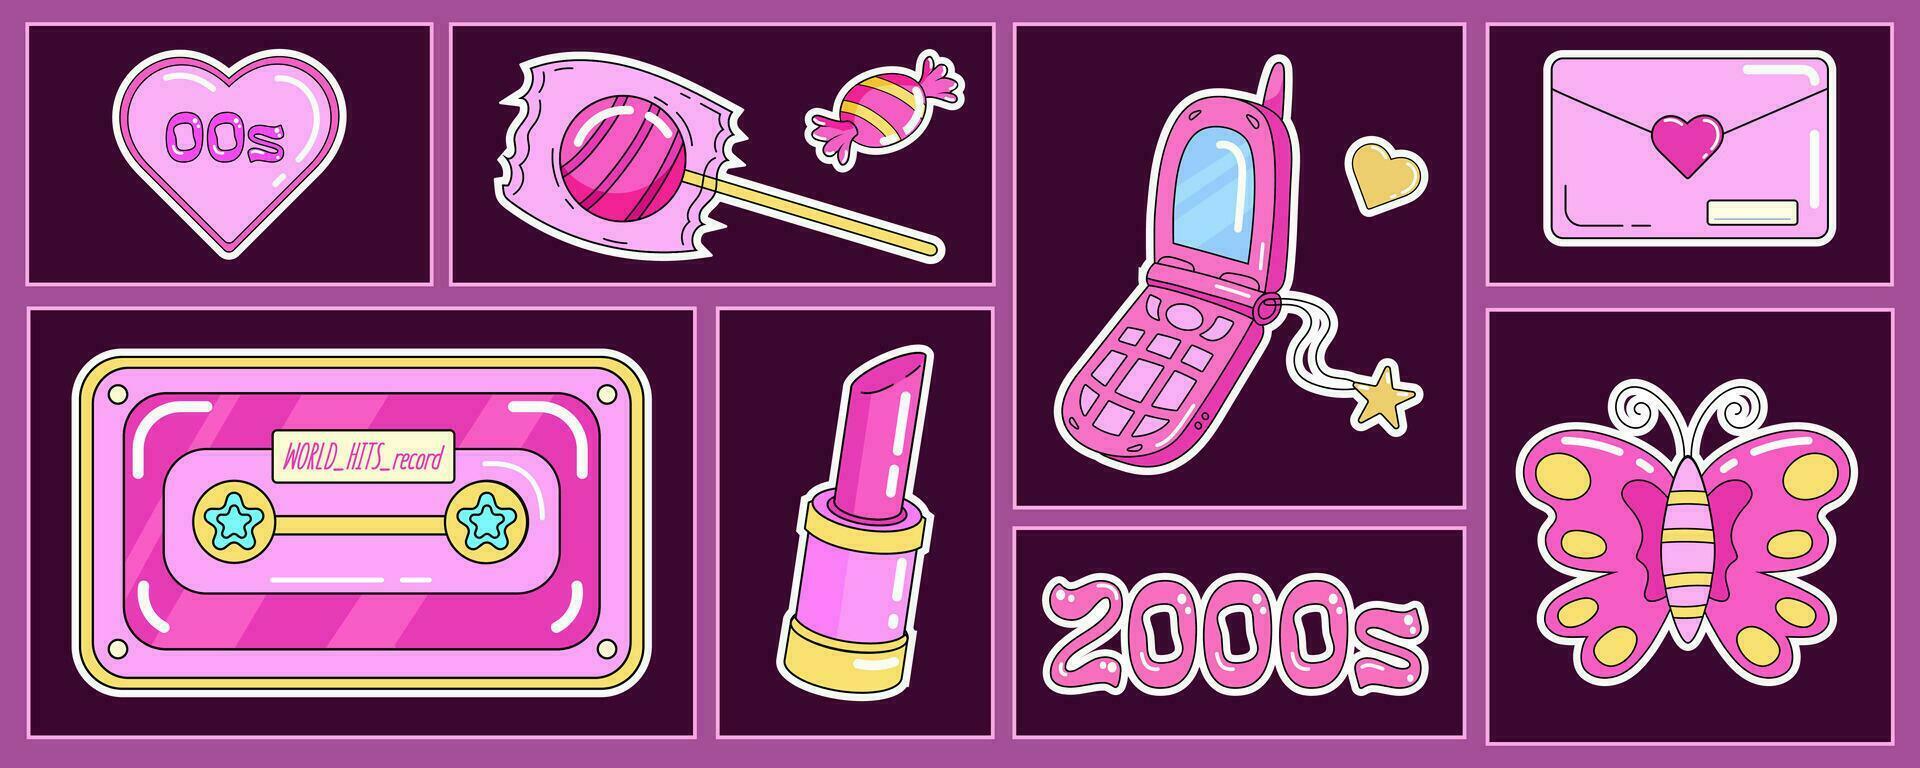 de moda y2k grupo de nostálgico retro objetos, 2000 móvil teléfono, audio casete, dulce y chupete, lápiz labial, corazones y mariposa. vector